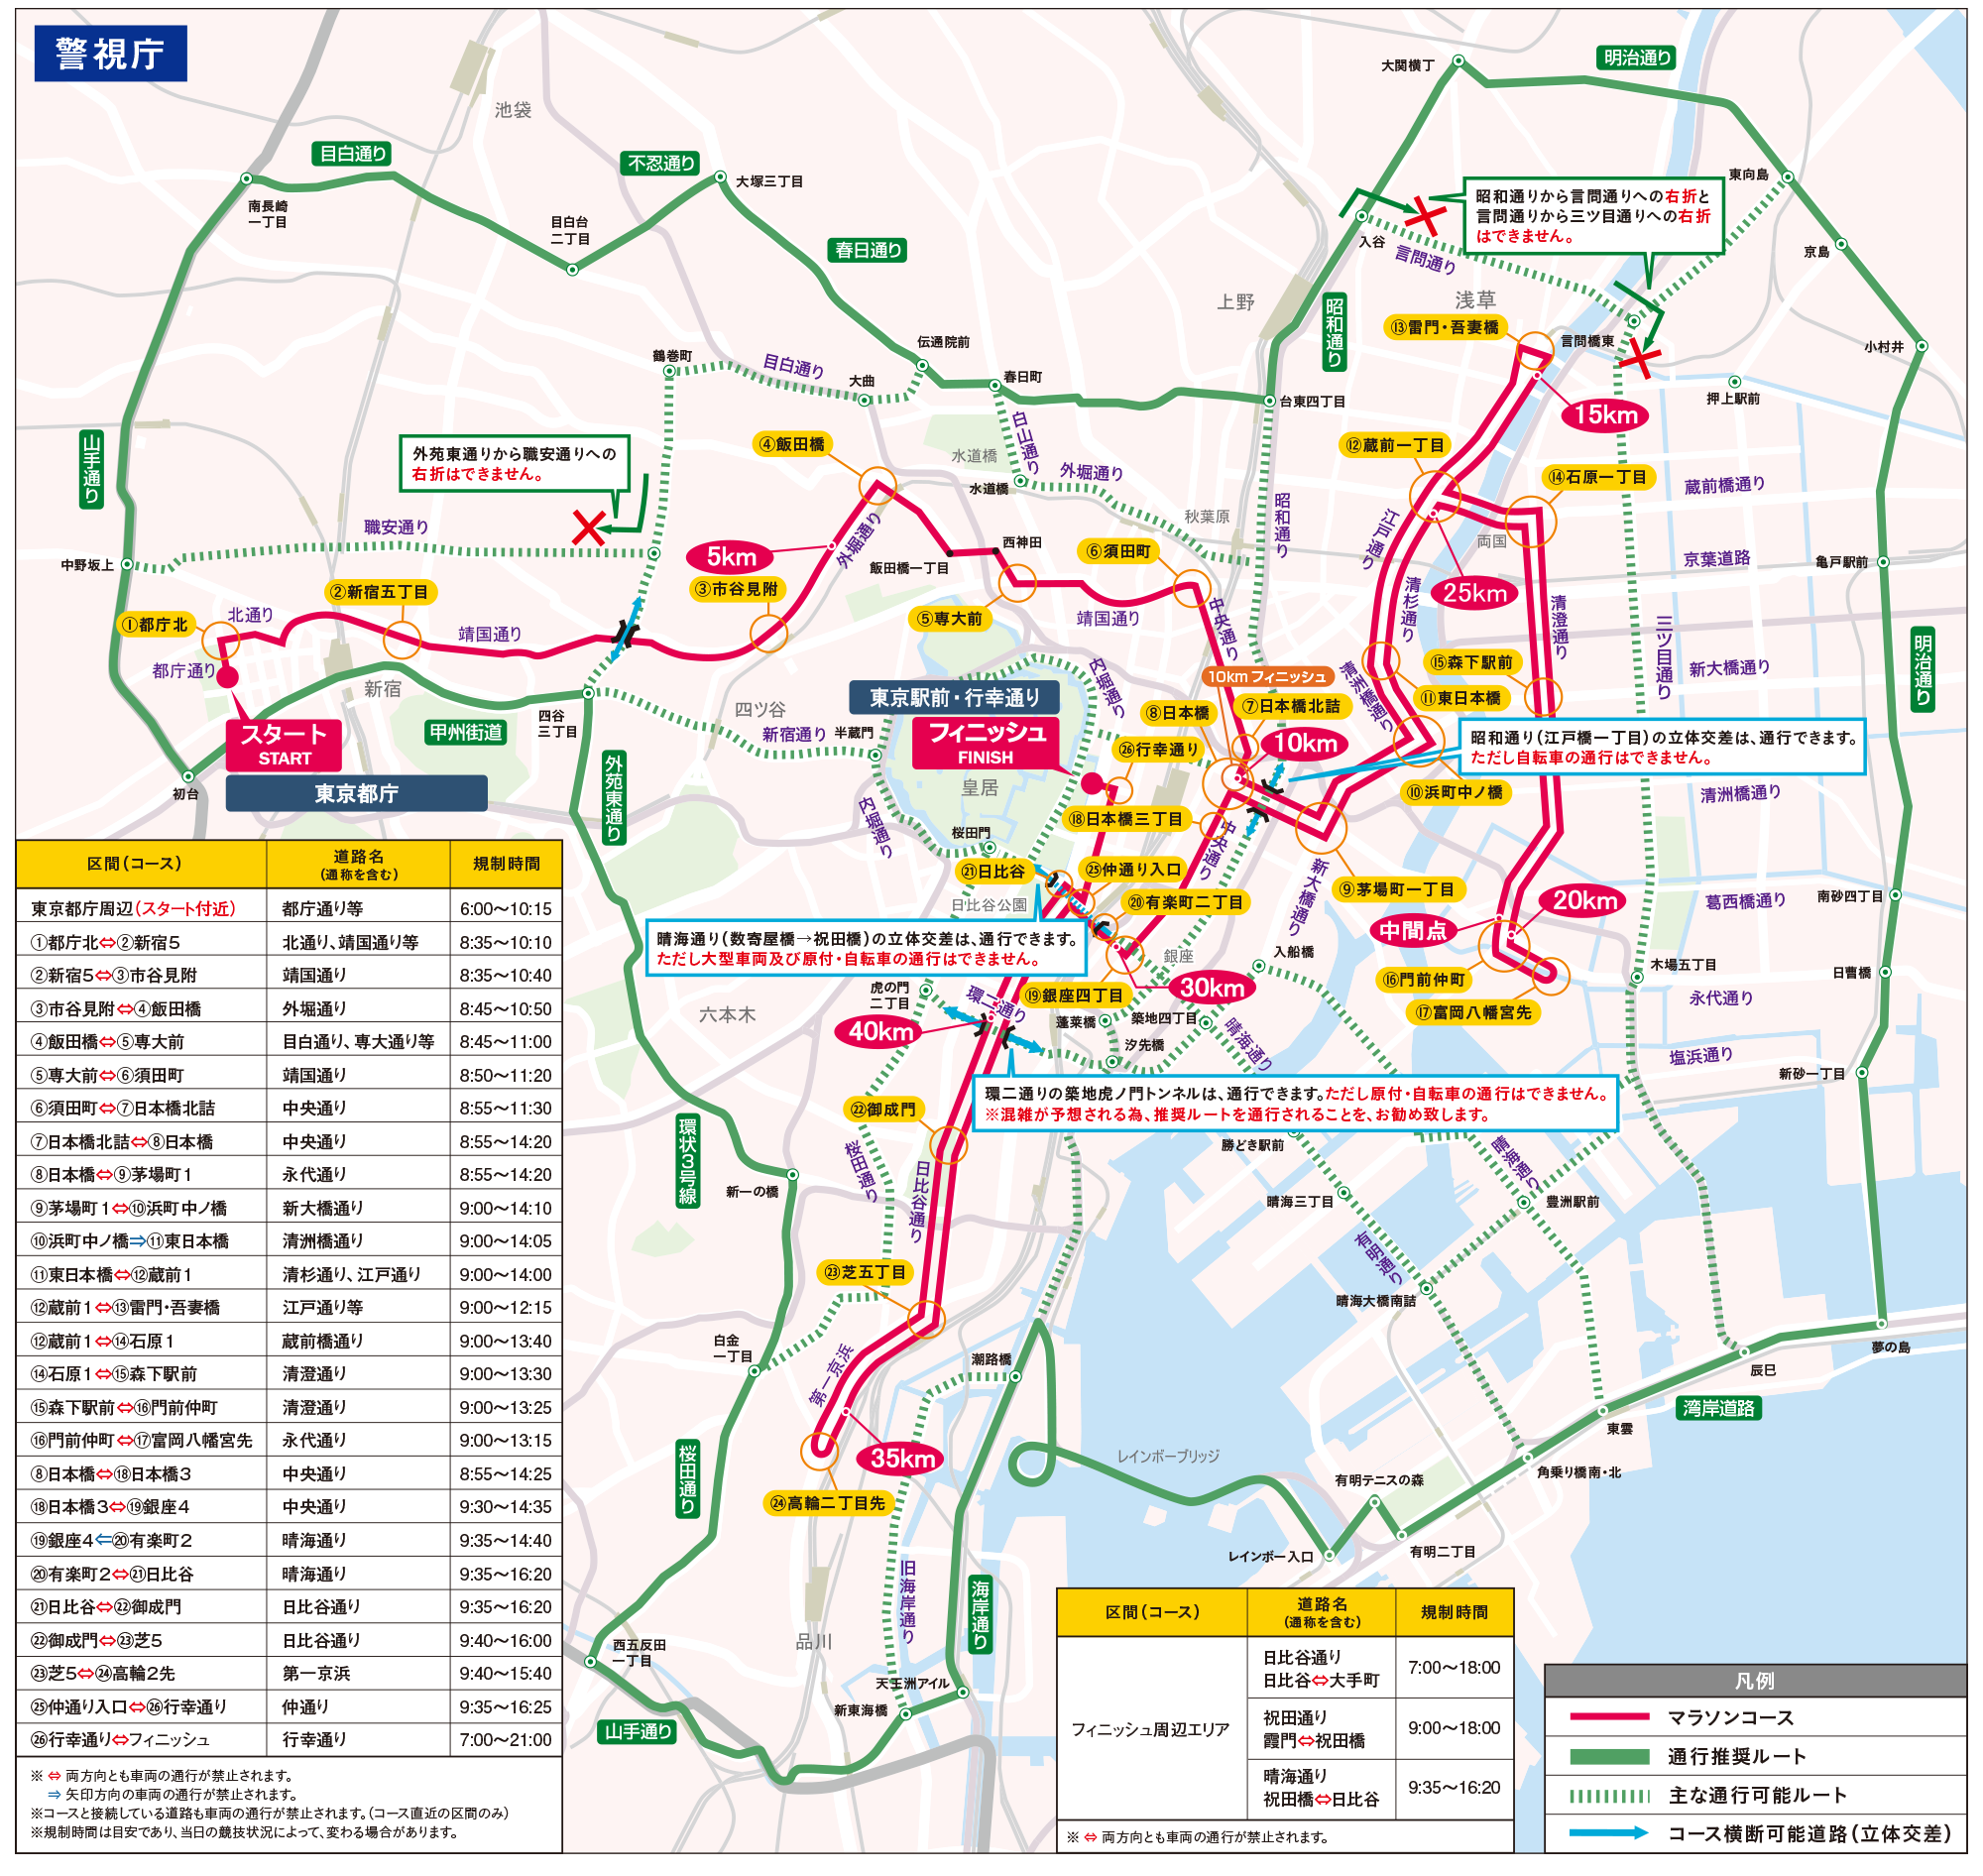 tokyo_marathon_traffic_restriction_map2017